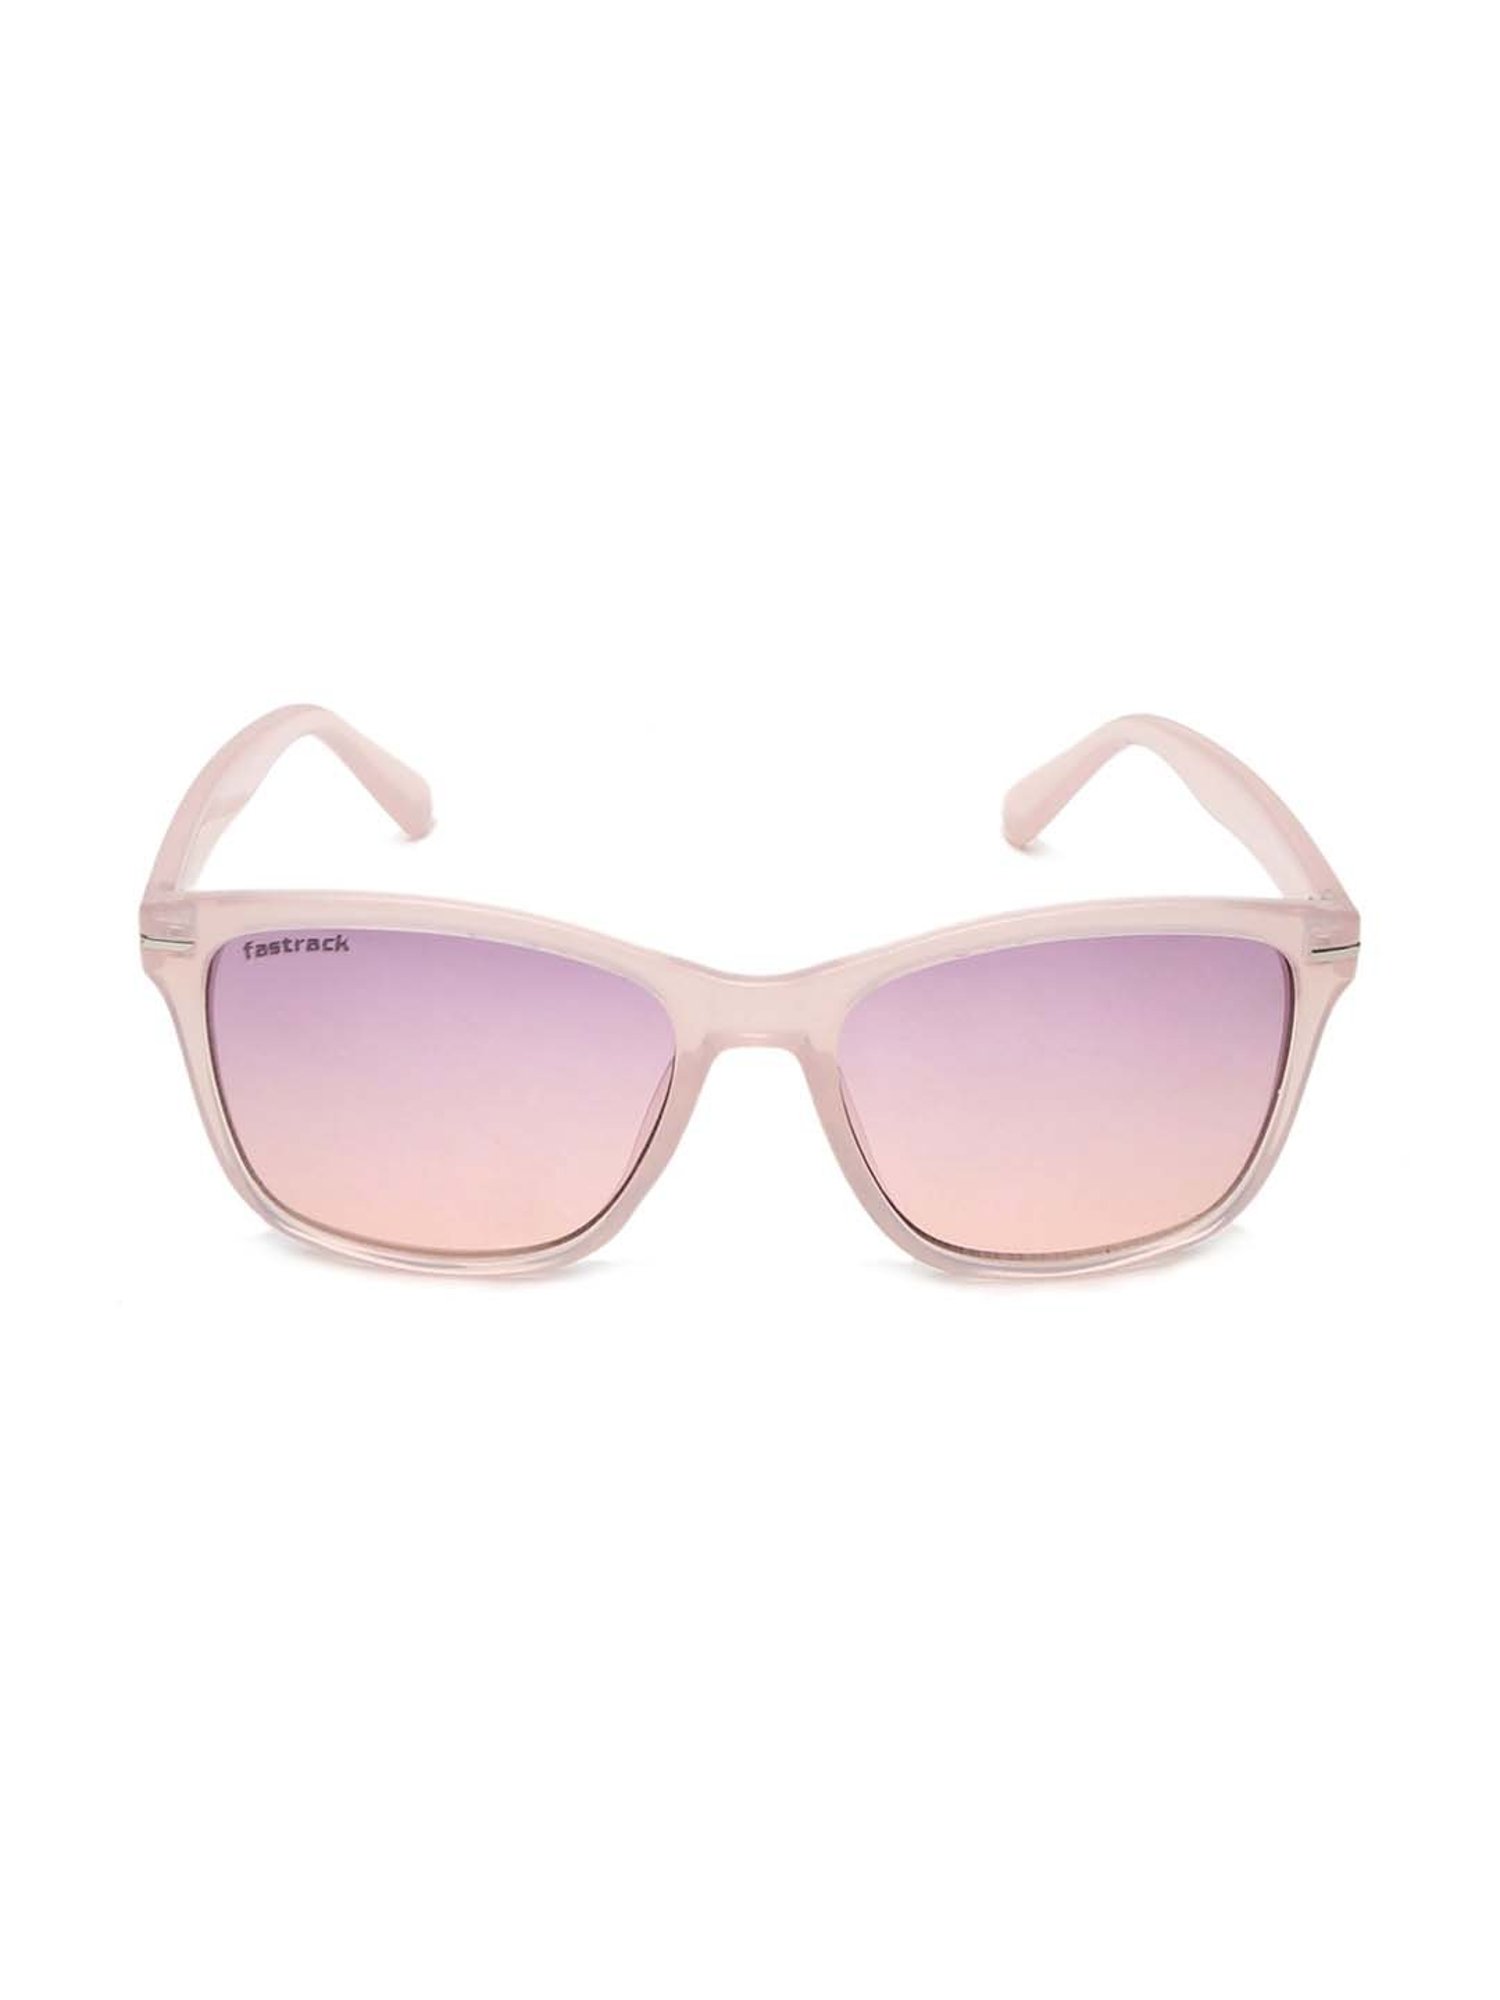 Buy fastrack Men Sunglasses [P315GR1] Online - Best Price fastrack Men  Sunglasses [P315GR1] - Justdial Shop Online.